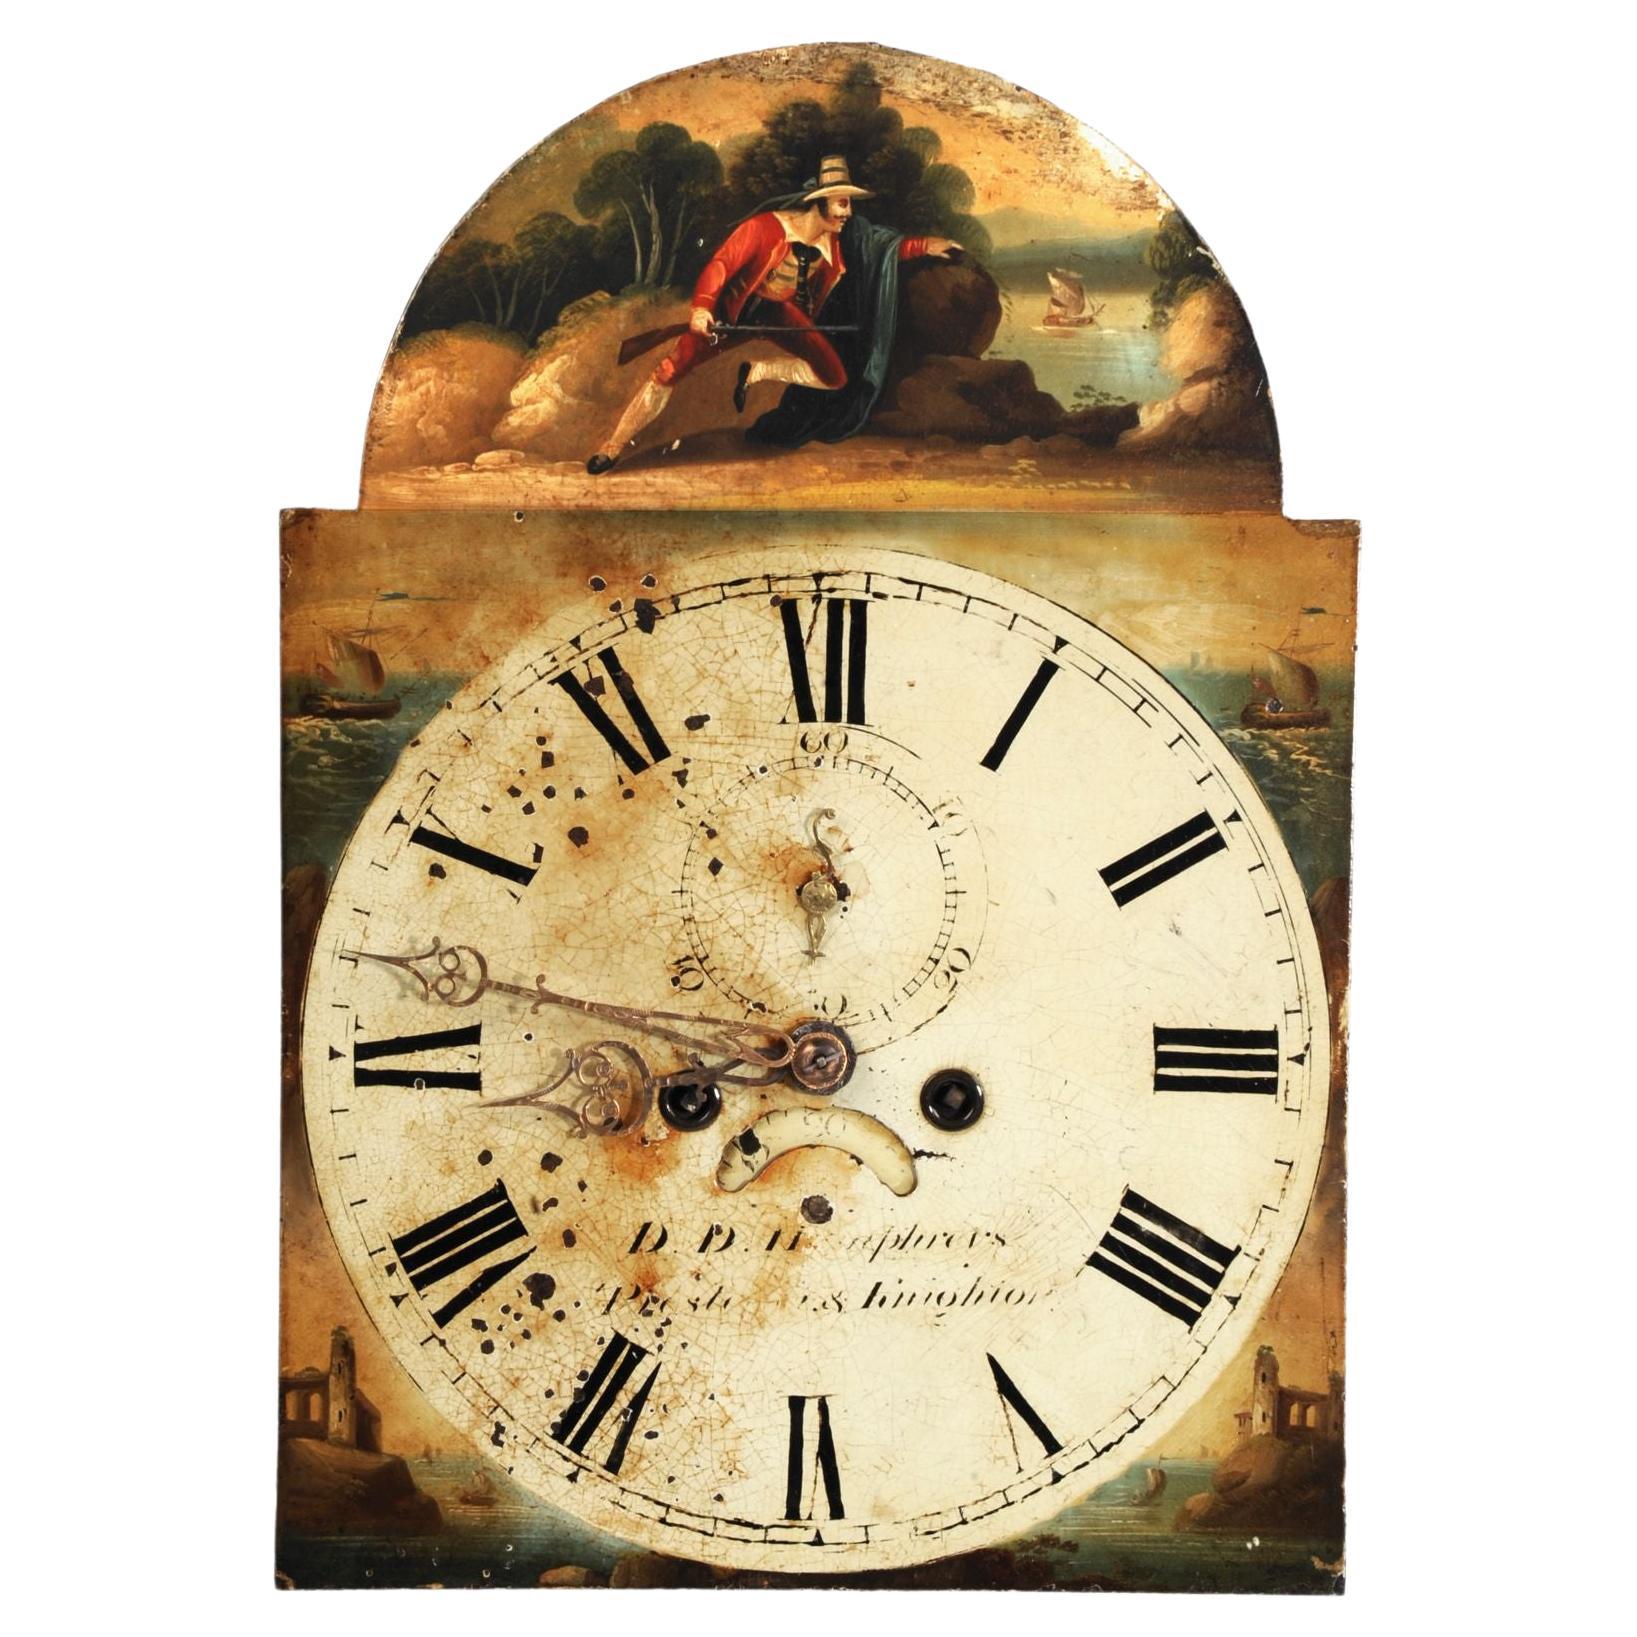 Horloge anglaise ancienne à cadran en fer, contrebandier, fonctionnant entièrement avec l'aiguille des secondes